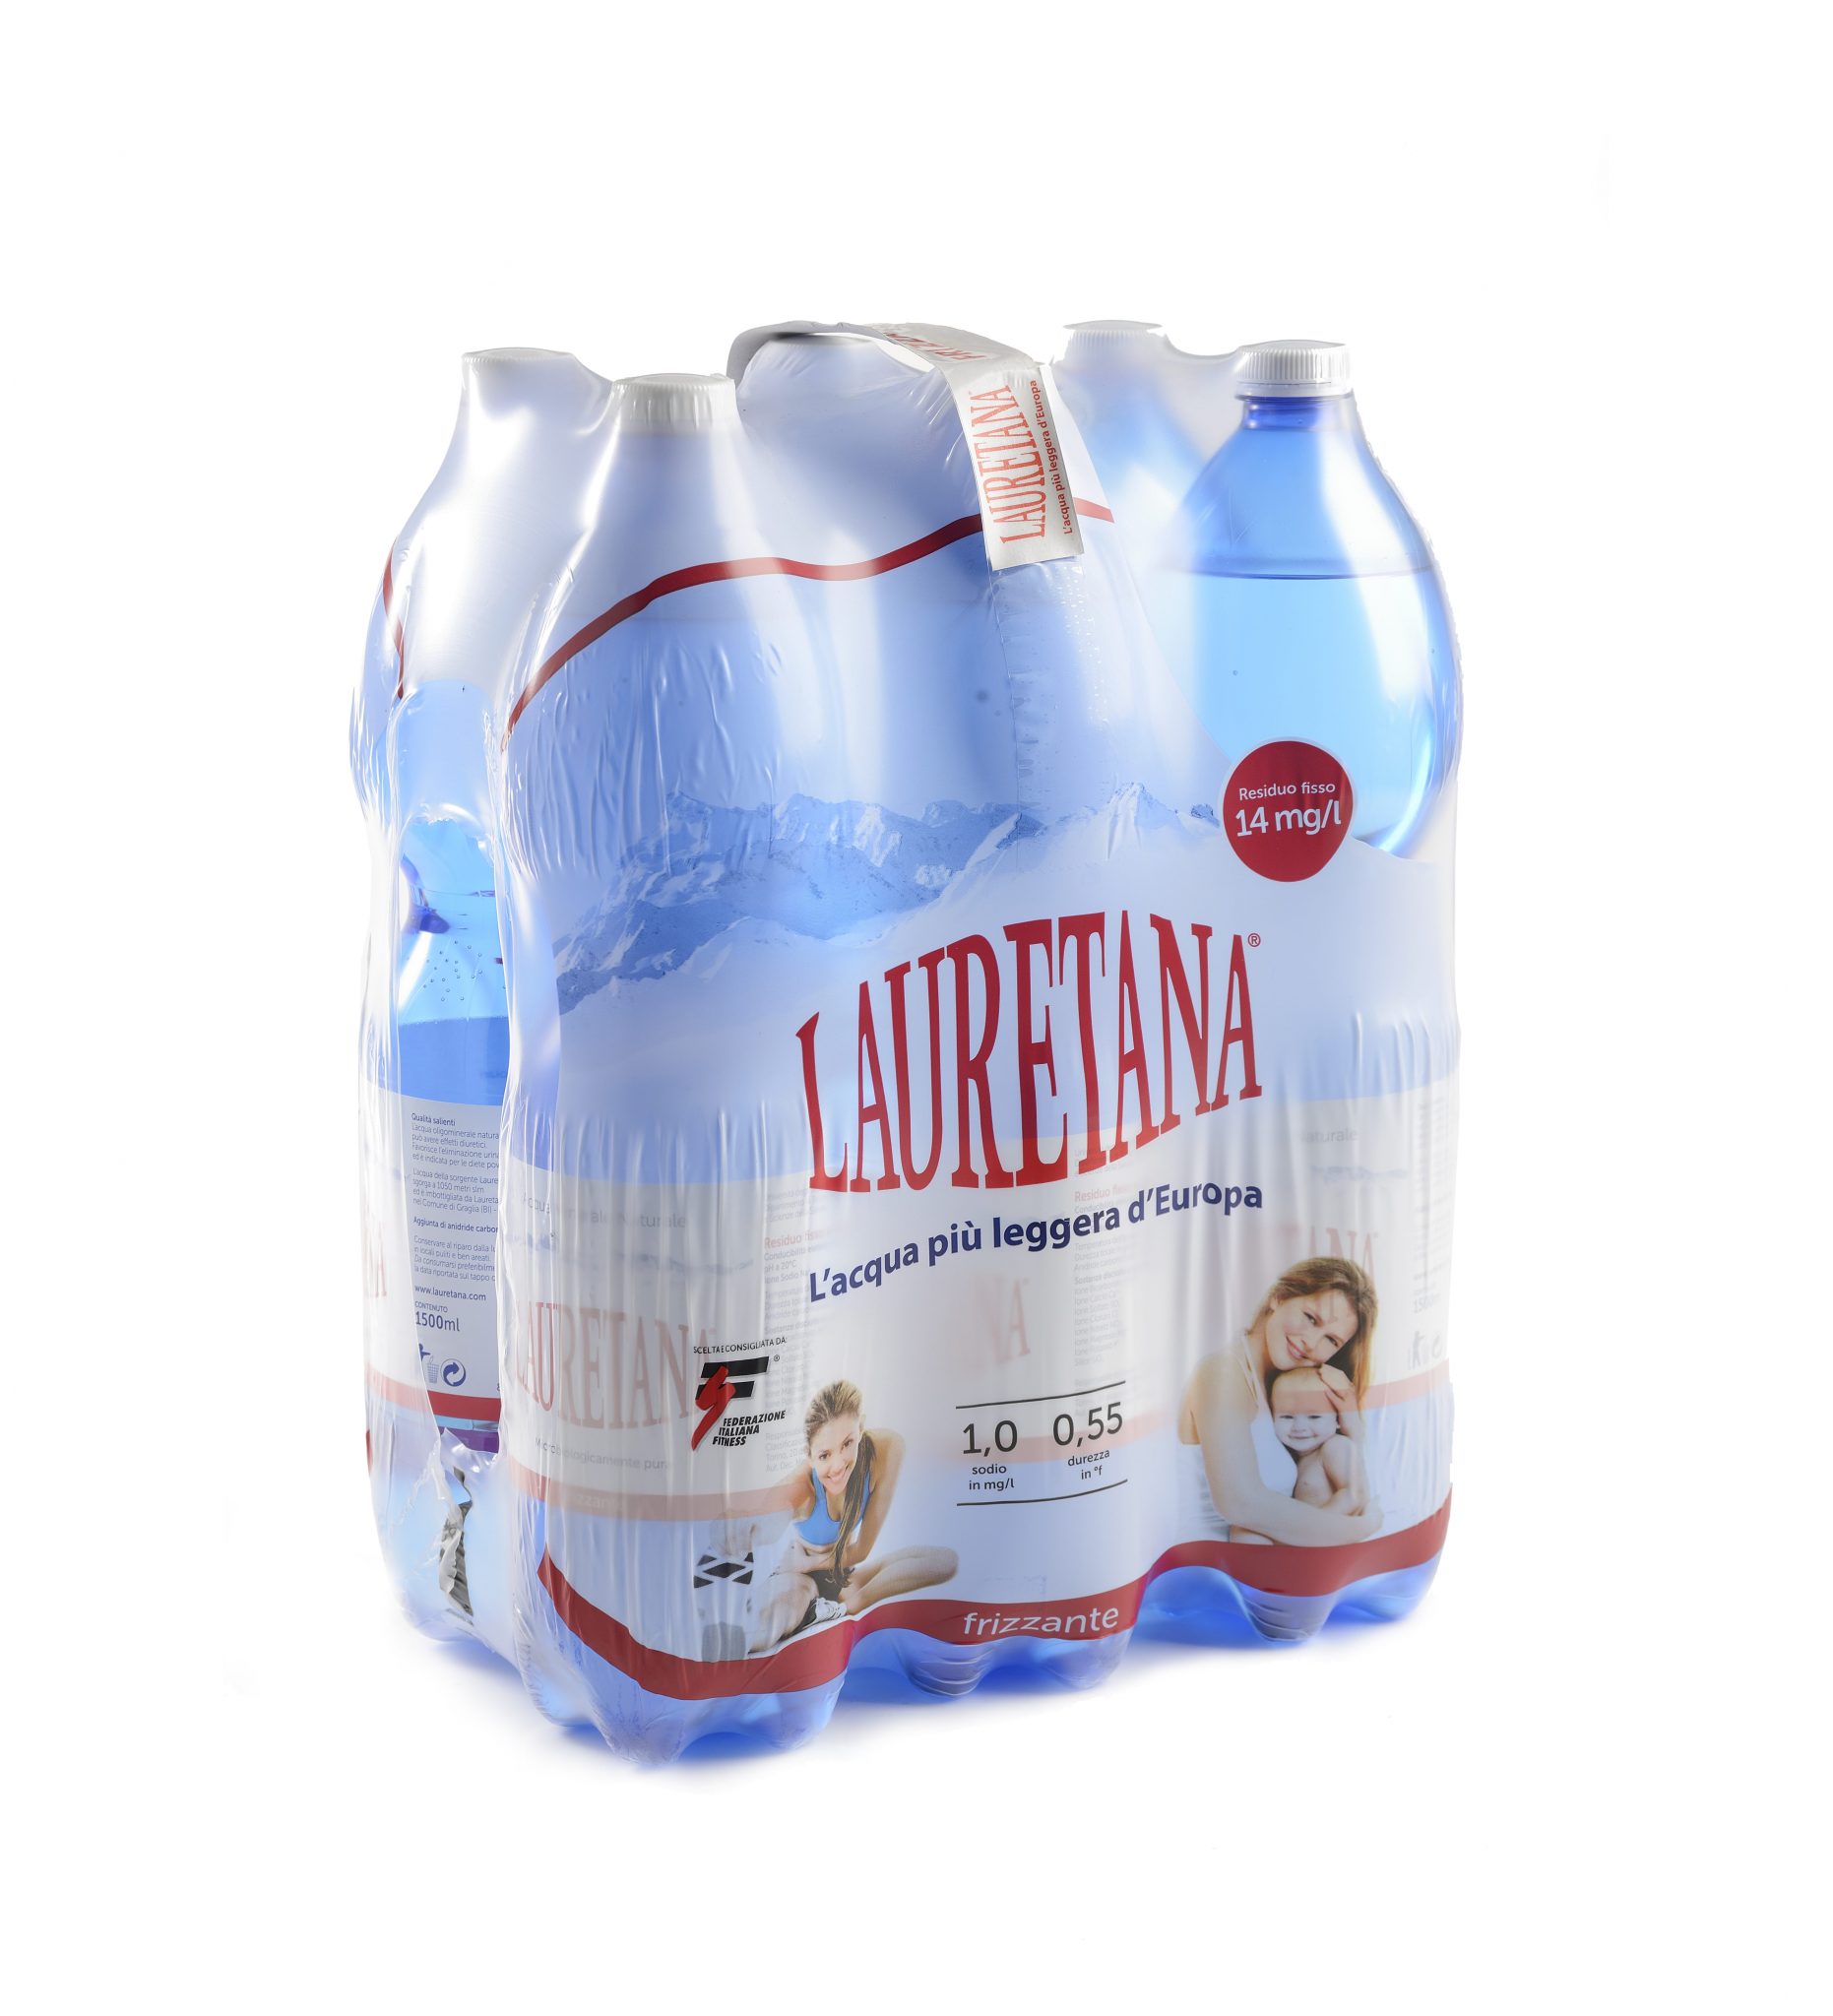 Acqua Lauretana 1,5 l (naturale/frizzante/liev. frizzante) - Macelleria -  Gastronomia - Mosca1916